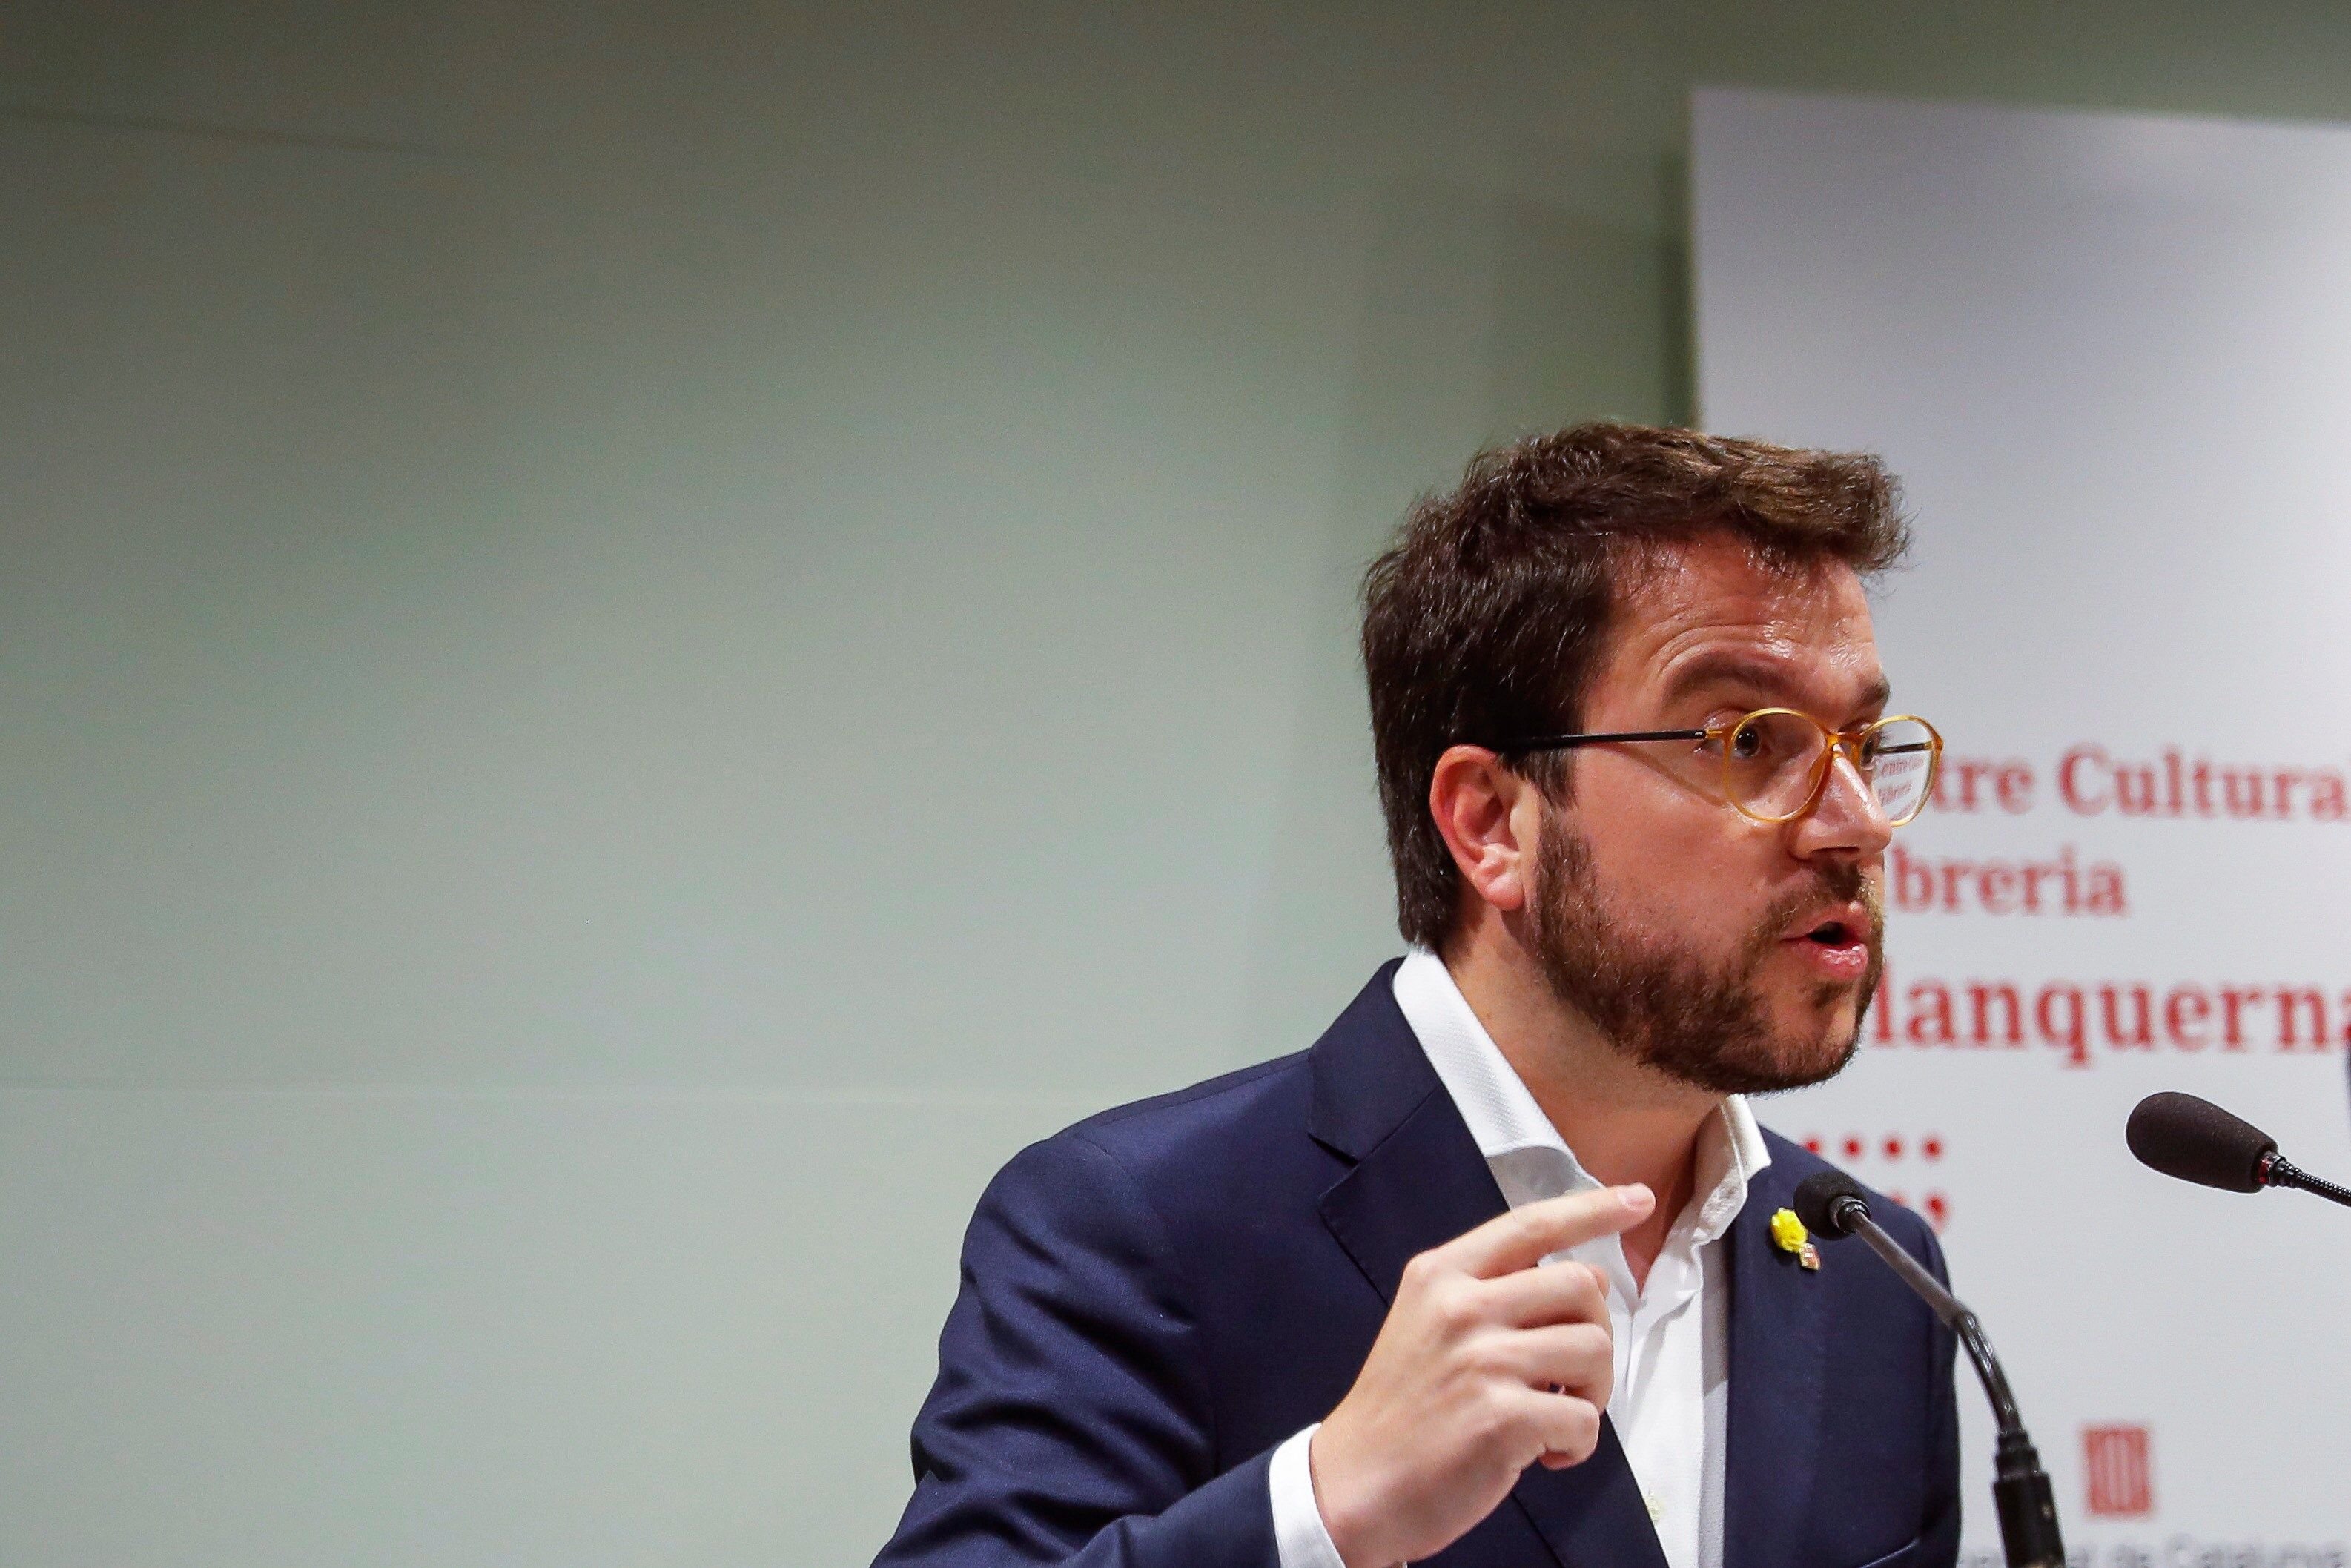 Aragonès exigeix a Sánchez que superi la "paràlisi política" i dialogui